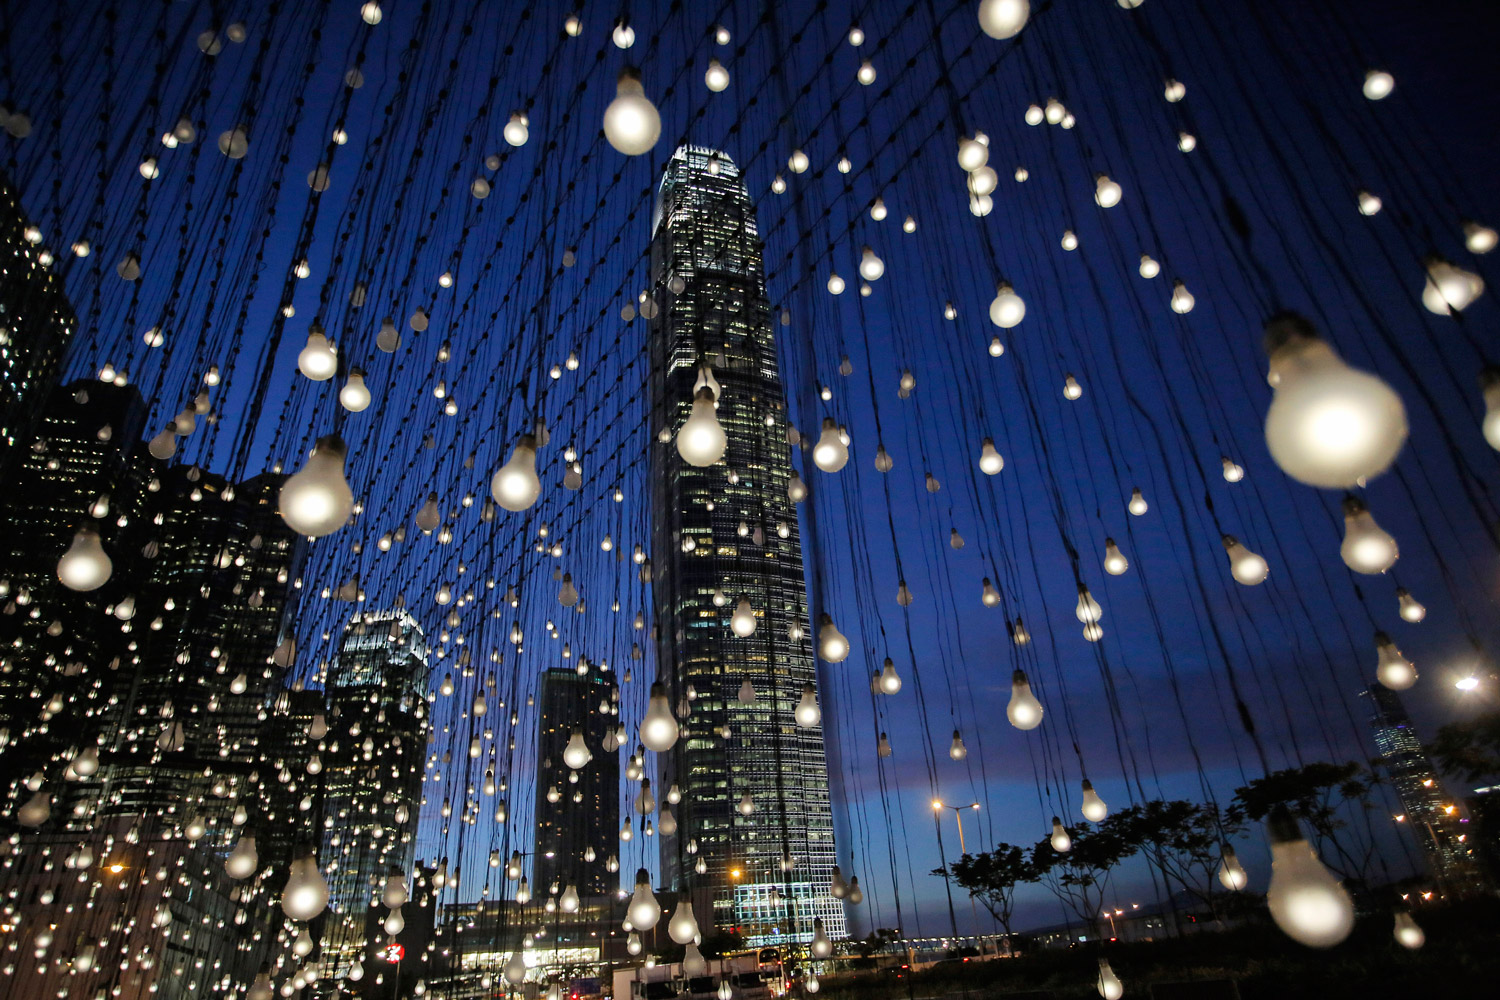 Más de 2.000 bombillas iluminan el cielo de Hong Kong.